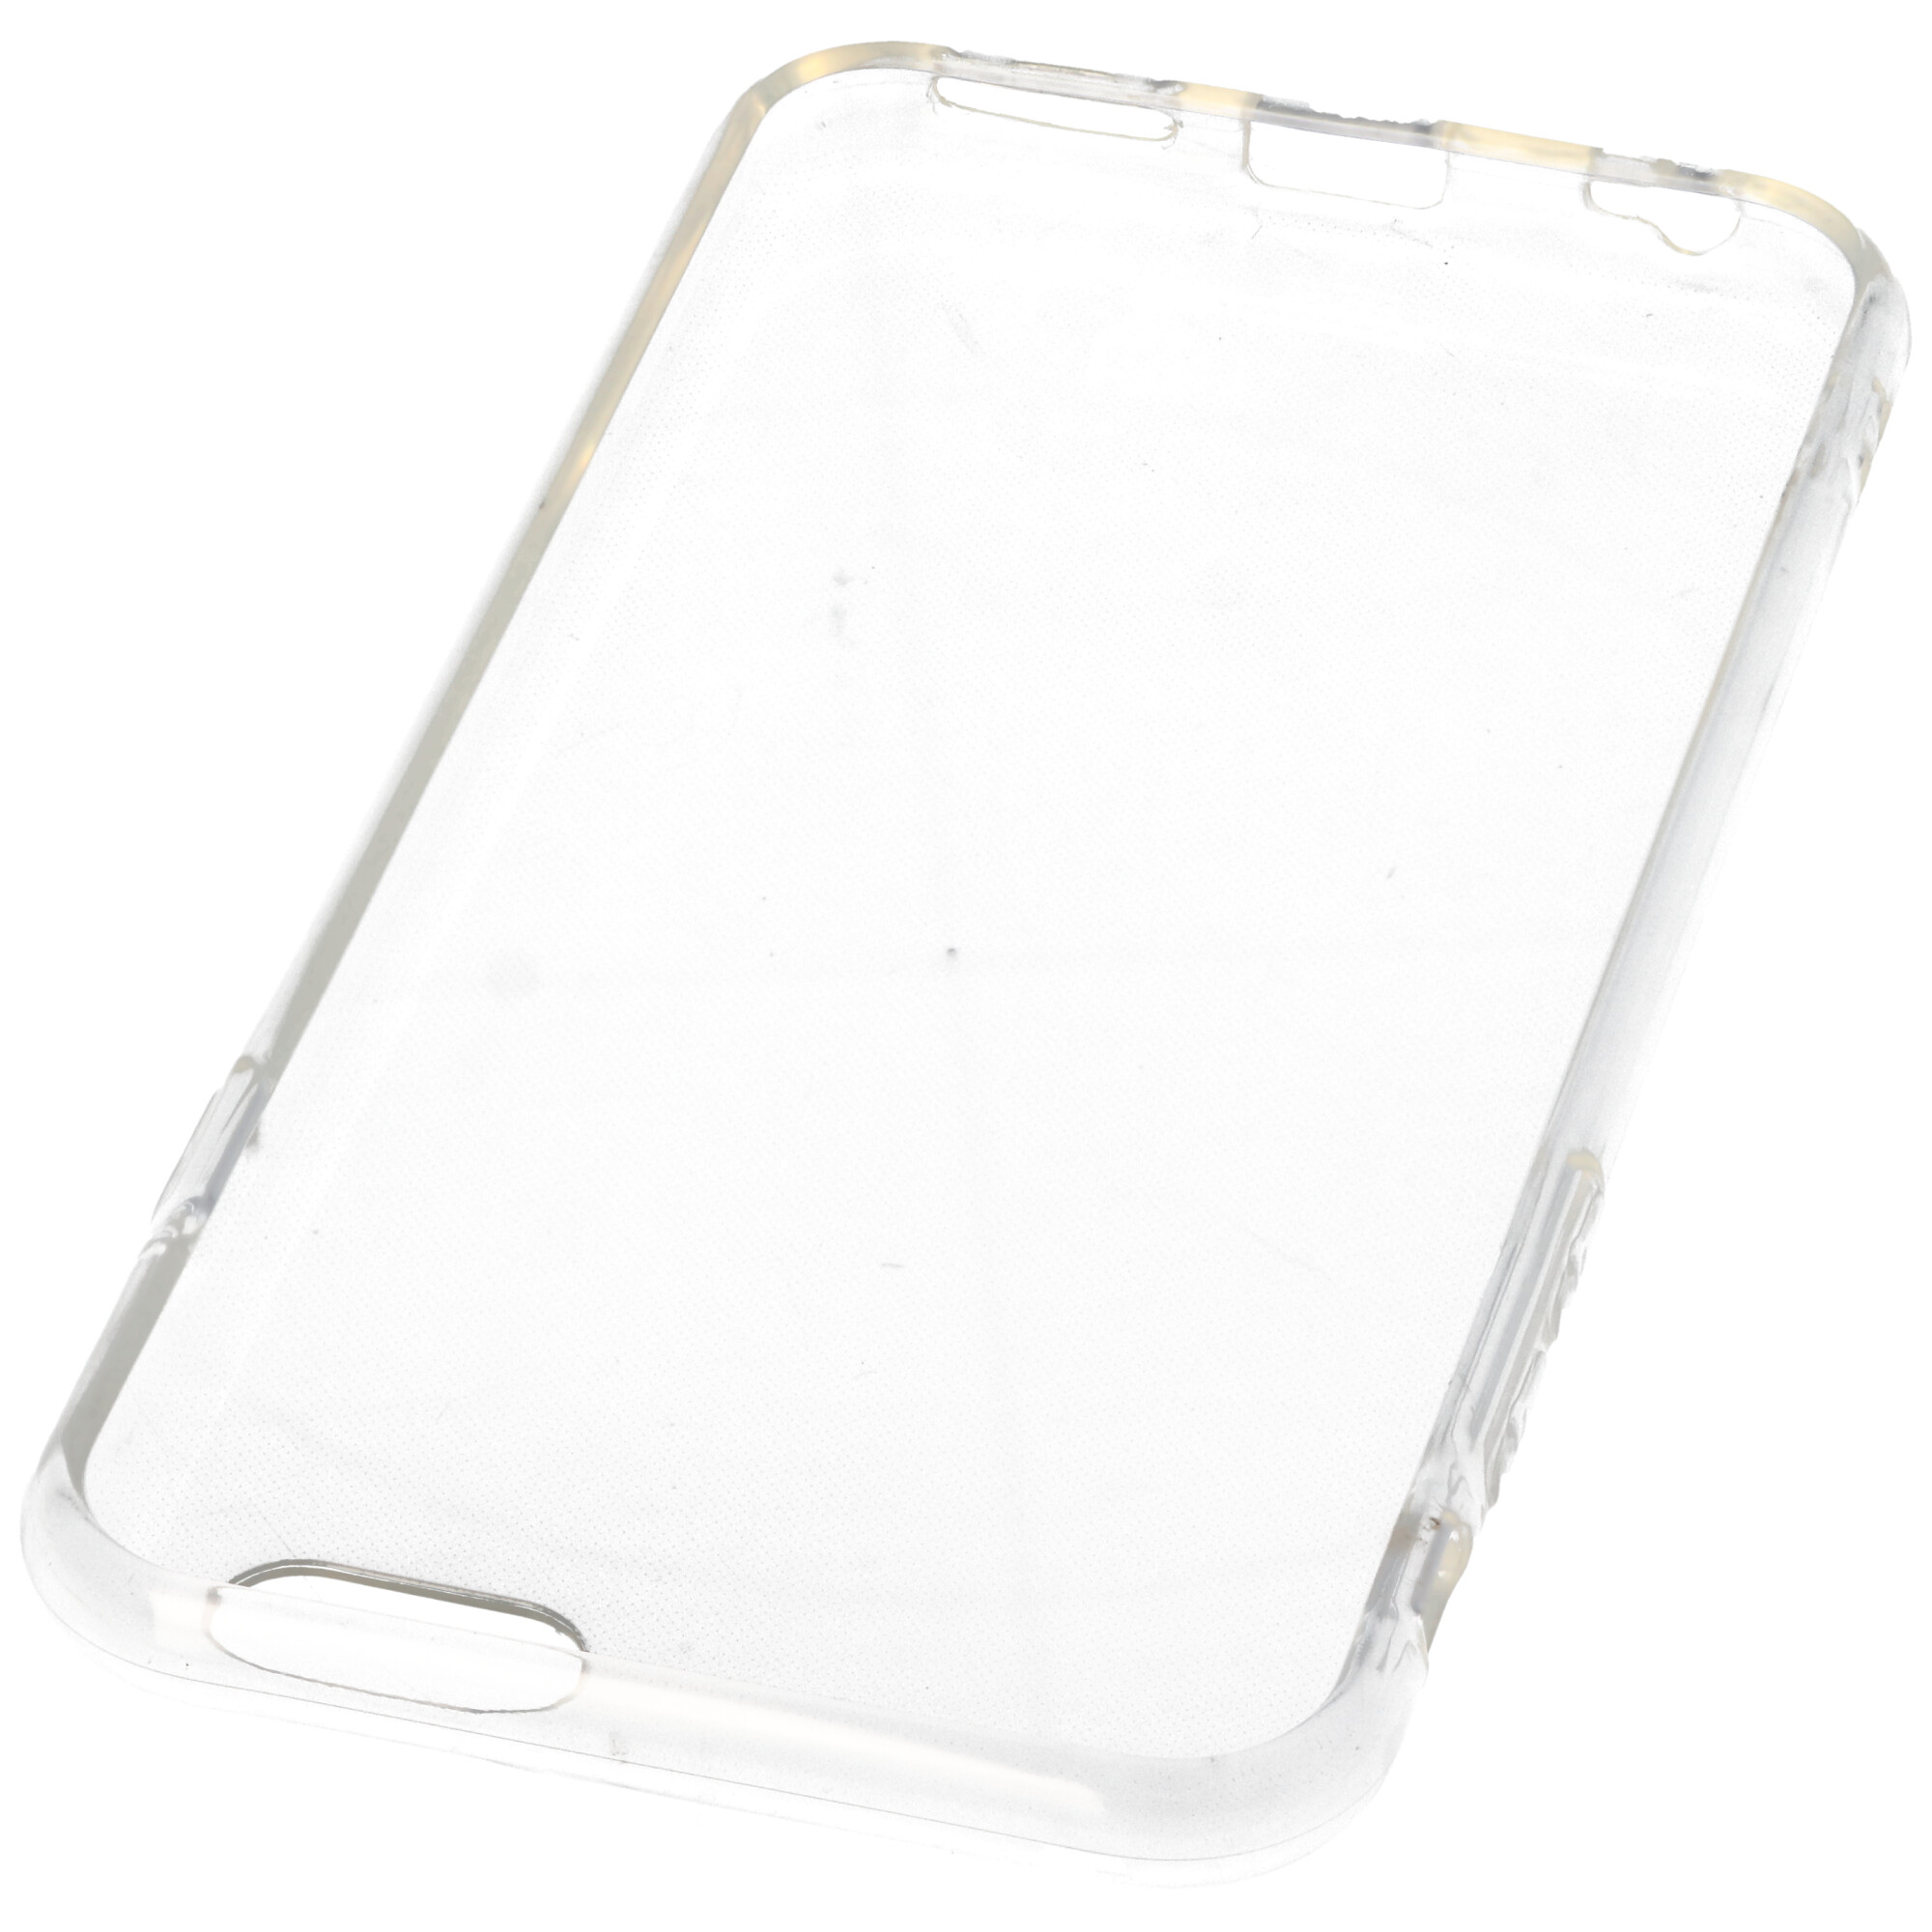 Hülle passend für Apple iPhone 6 / iPhone 6S - transparente Schutzhülle, Anti-Gelb Luftkissen Fallschutz Silikon Handyhülle robustes TPU Case